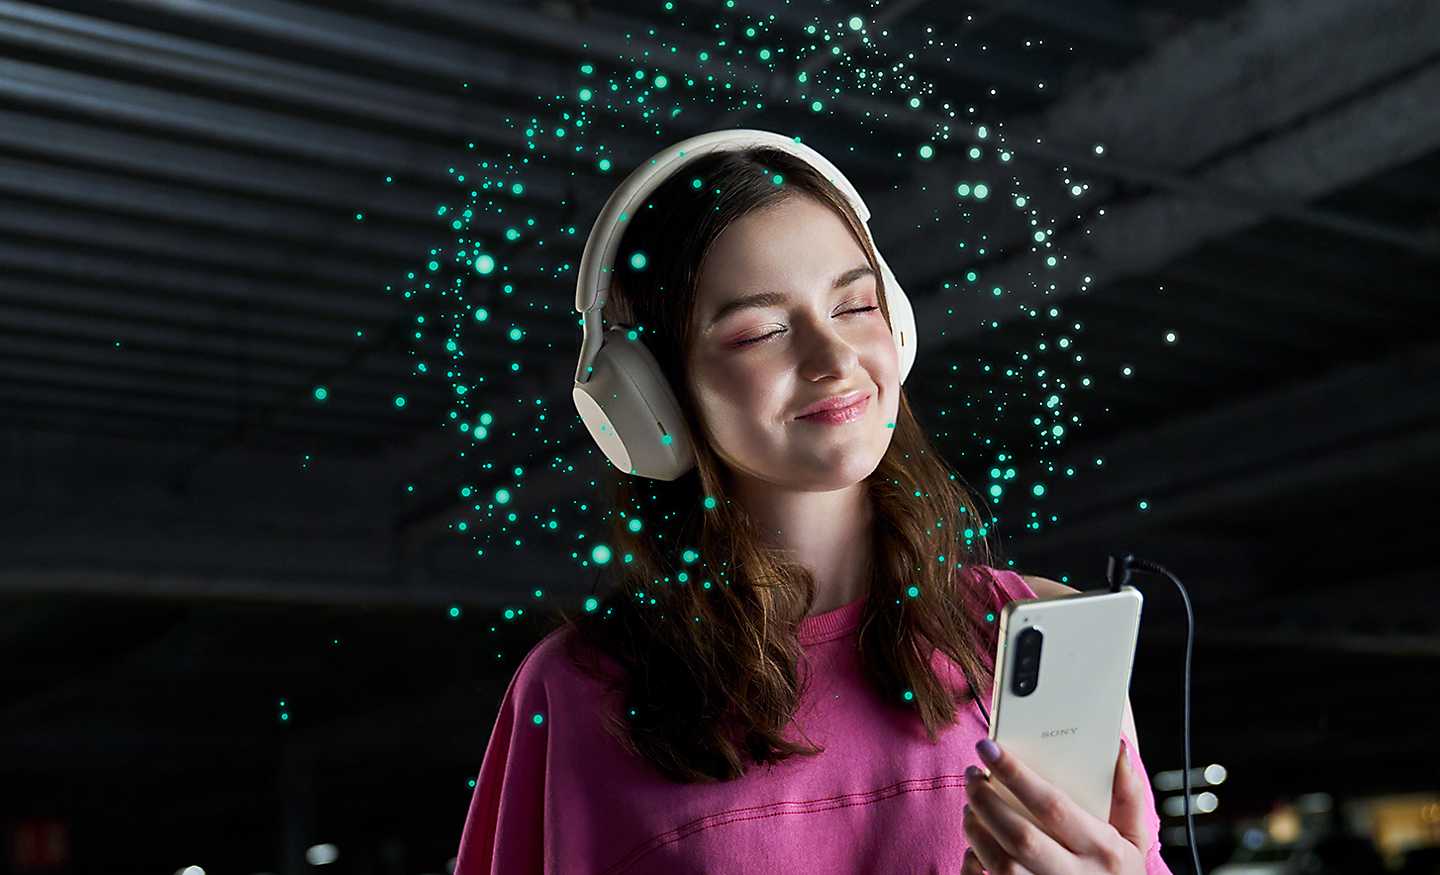 Žena s nasazenými sluchátky poslouchá hudbu na telefonu Xperia 5 IV – kolem hlavy má jiskřivá světla představující technologii 360 Reality Audio